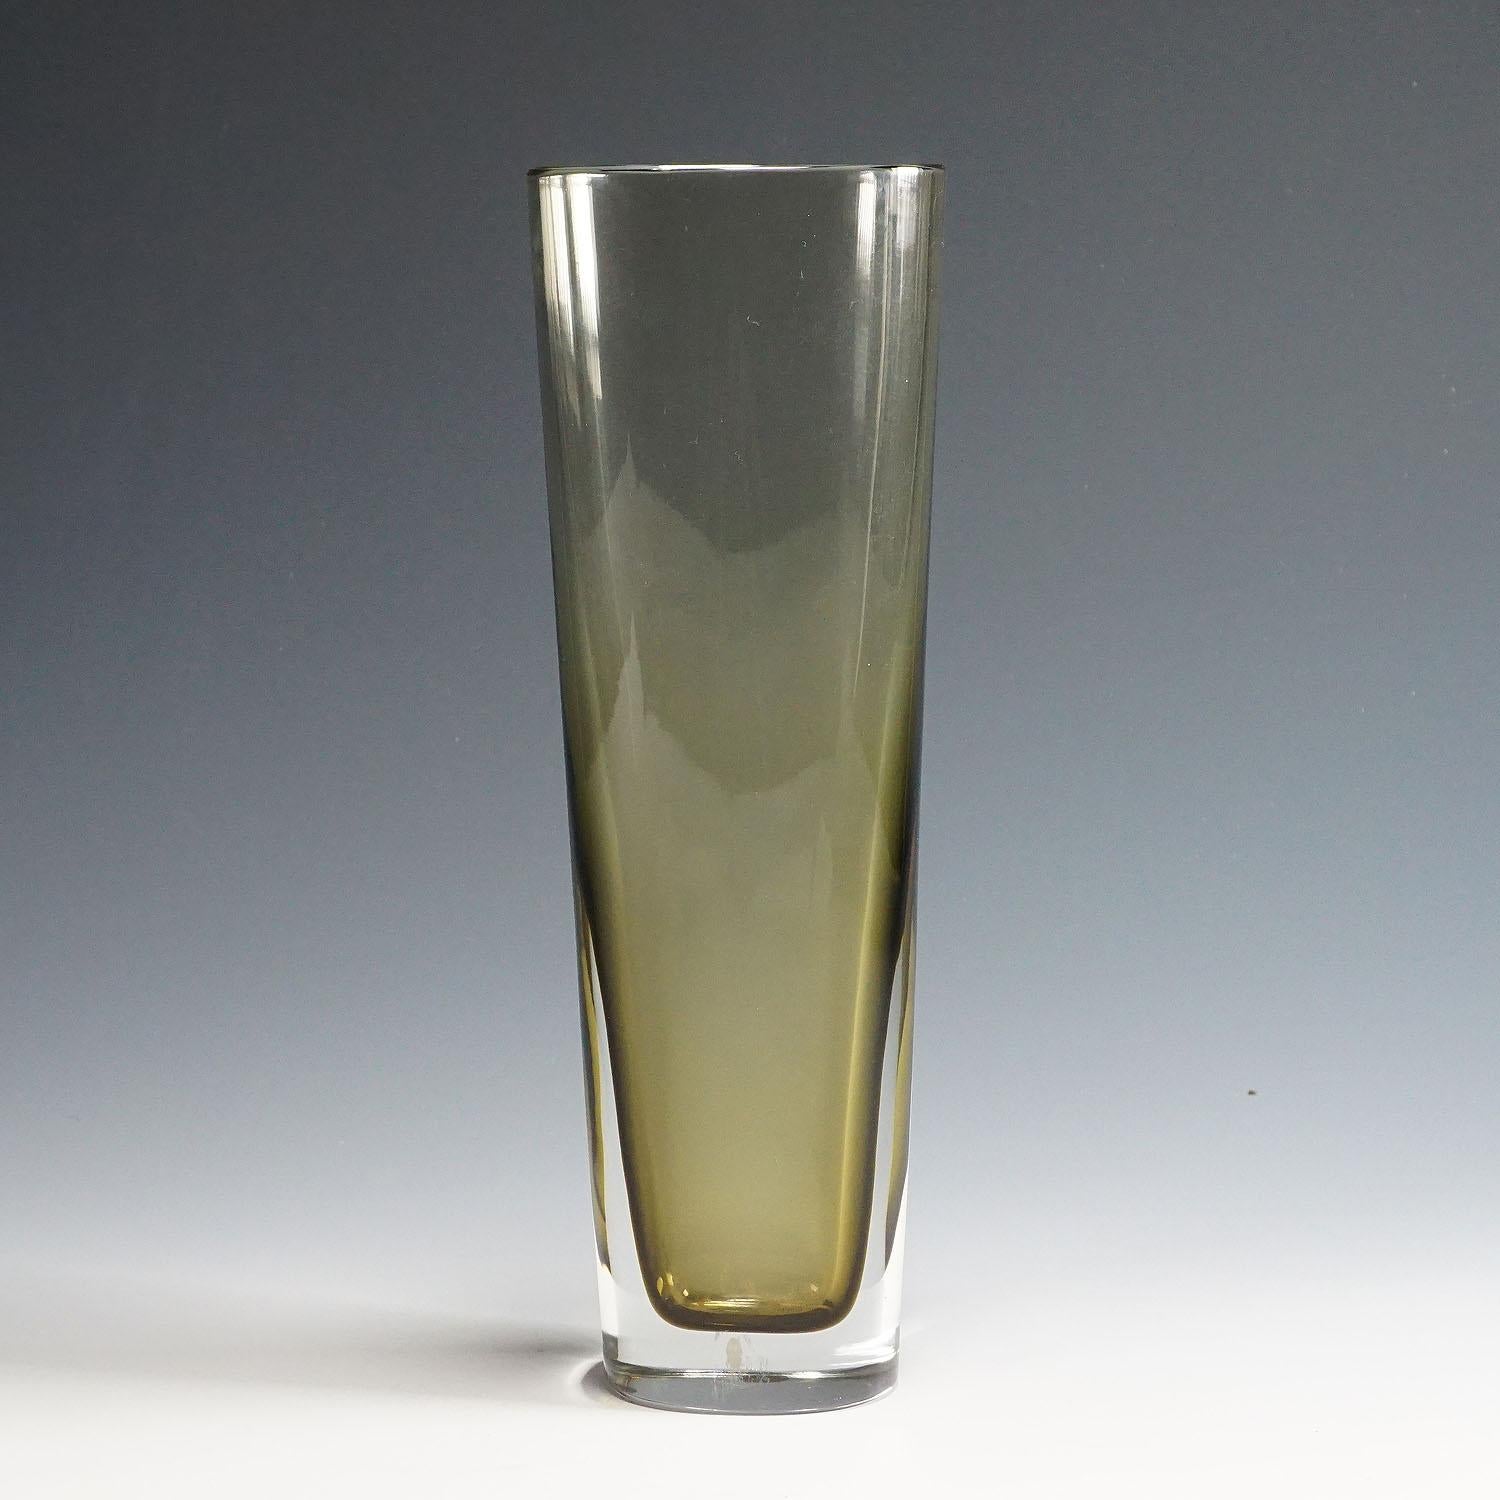 Grand vase vénitien en verre Sommerso fabriqué par Seguso Vetri d'Arte et conçu par Flavio Poli dans les années 1960. Verre Sommerso clair et gris, bord poli. Repose de l'étiquette Seguso des années 1960 sur le corps. Signé 